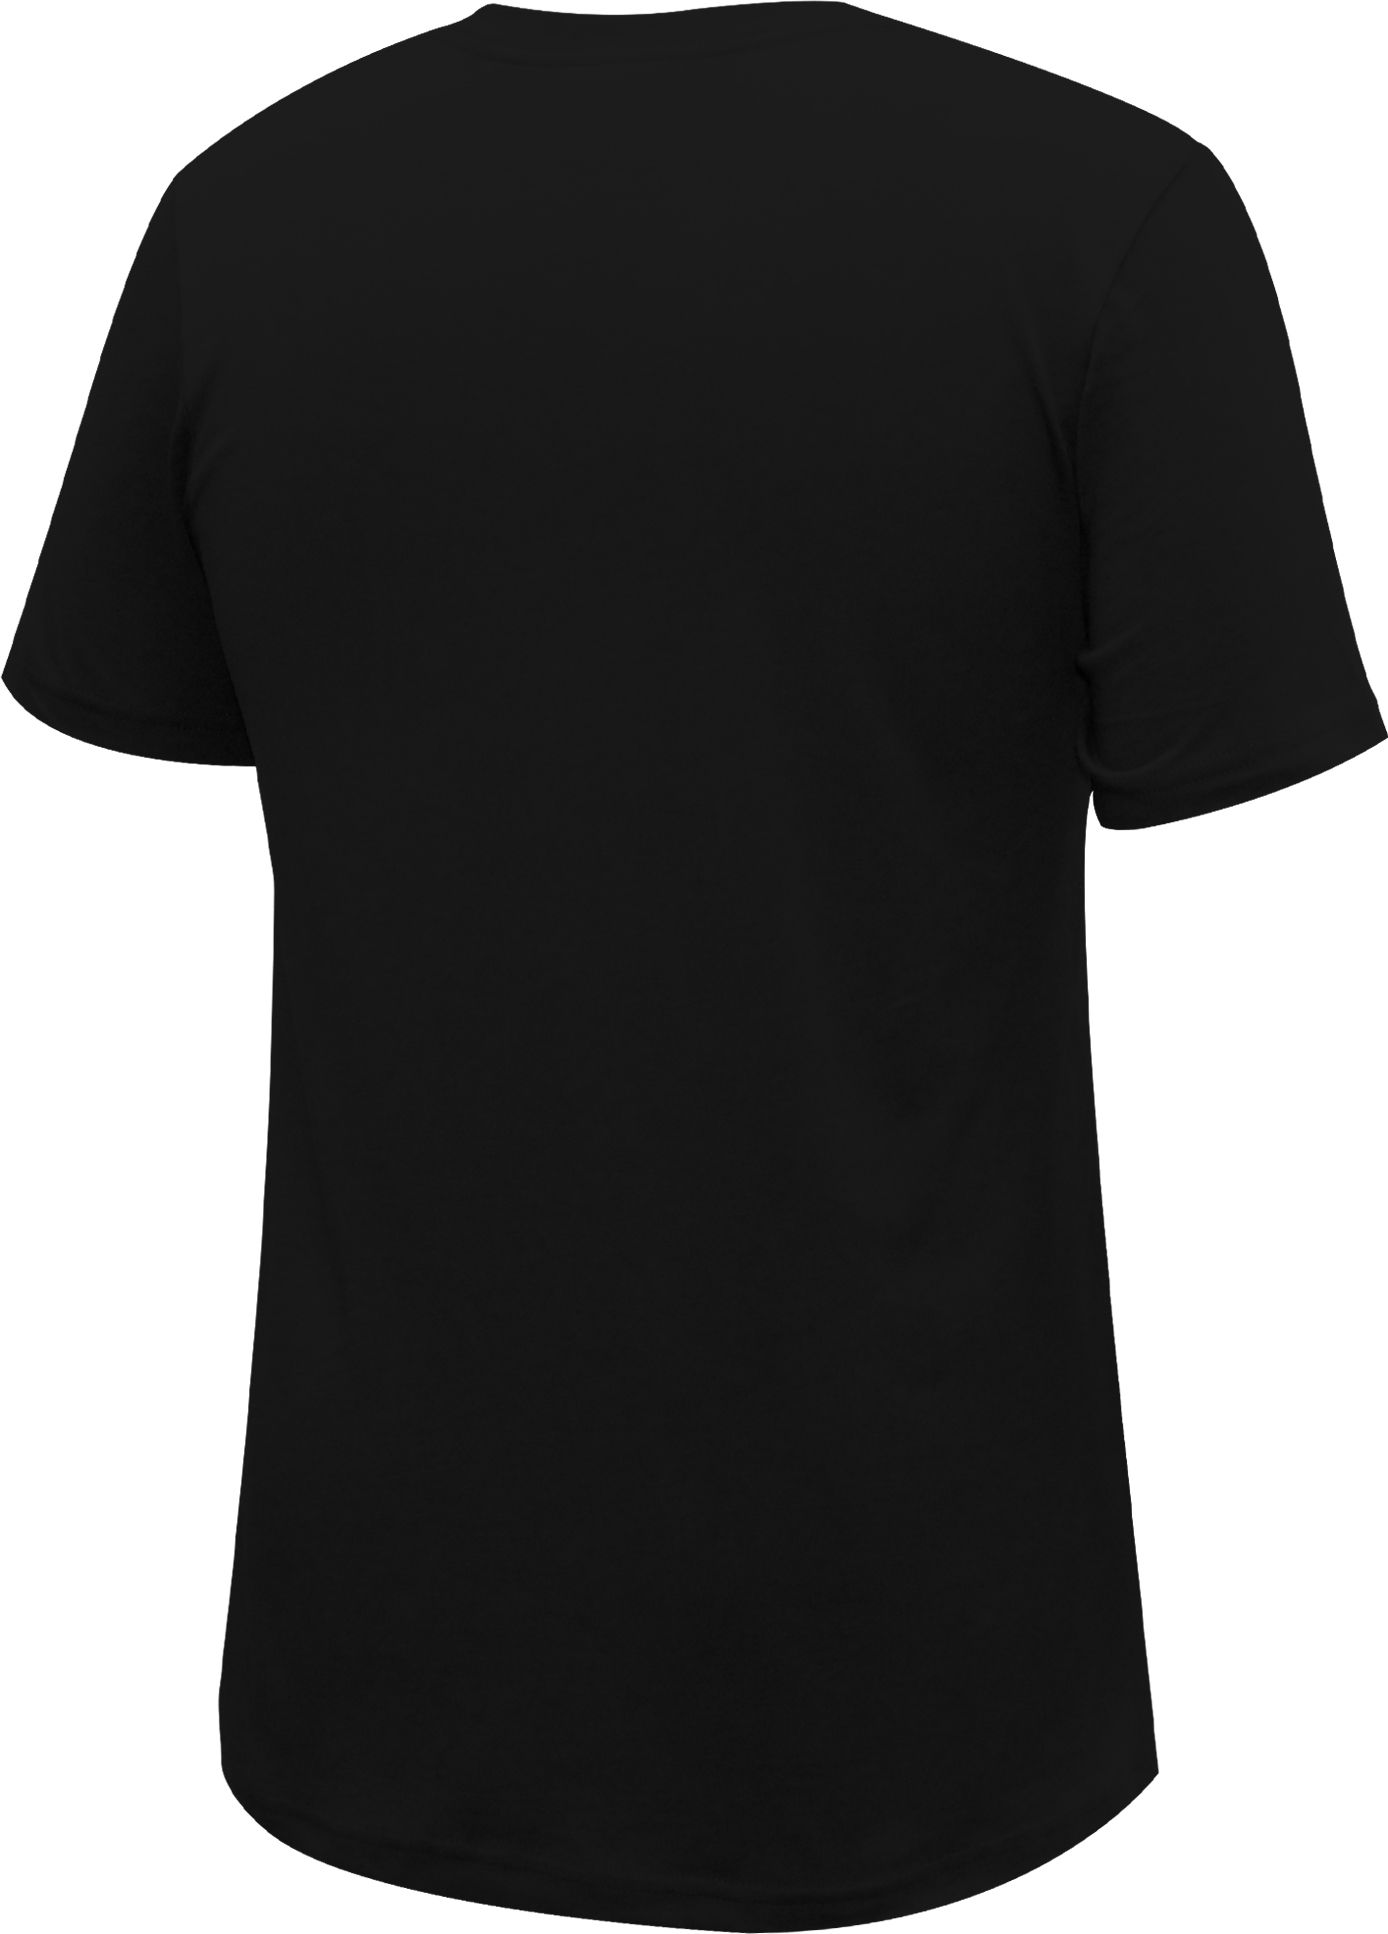 Stadium Essentials Inter Miami CF Black T-Shirt